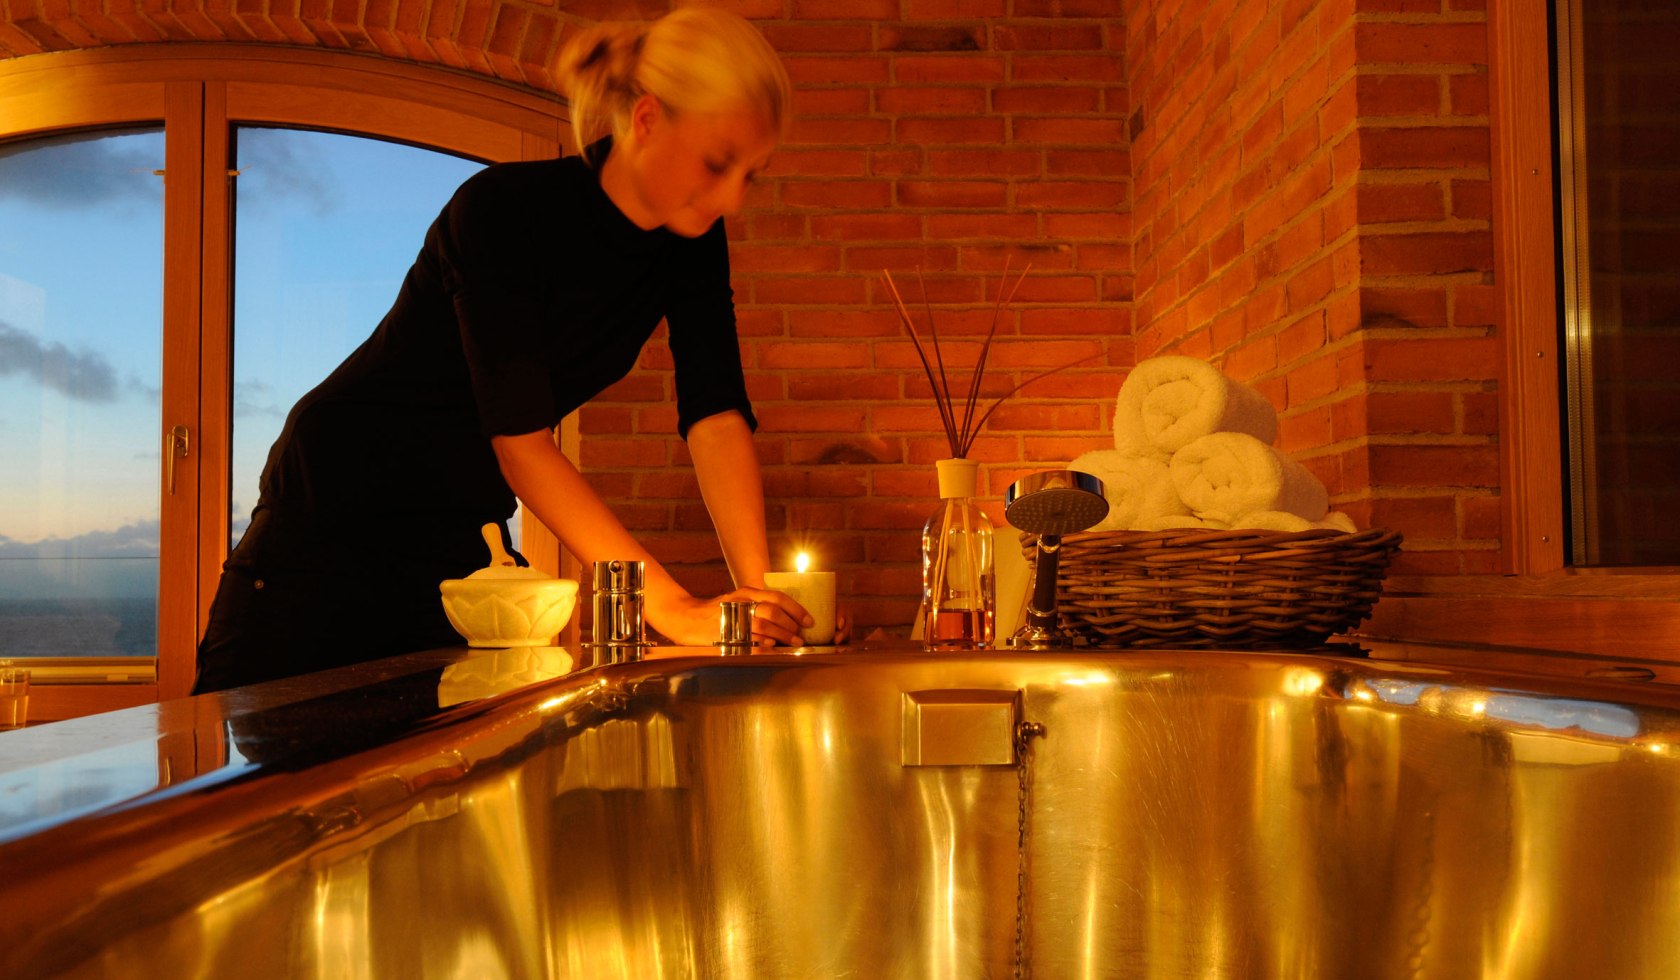 Frau richtet Badewanne im Kerzenlicht an, © Hotel Seesteg Norderney